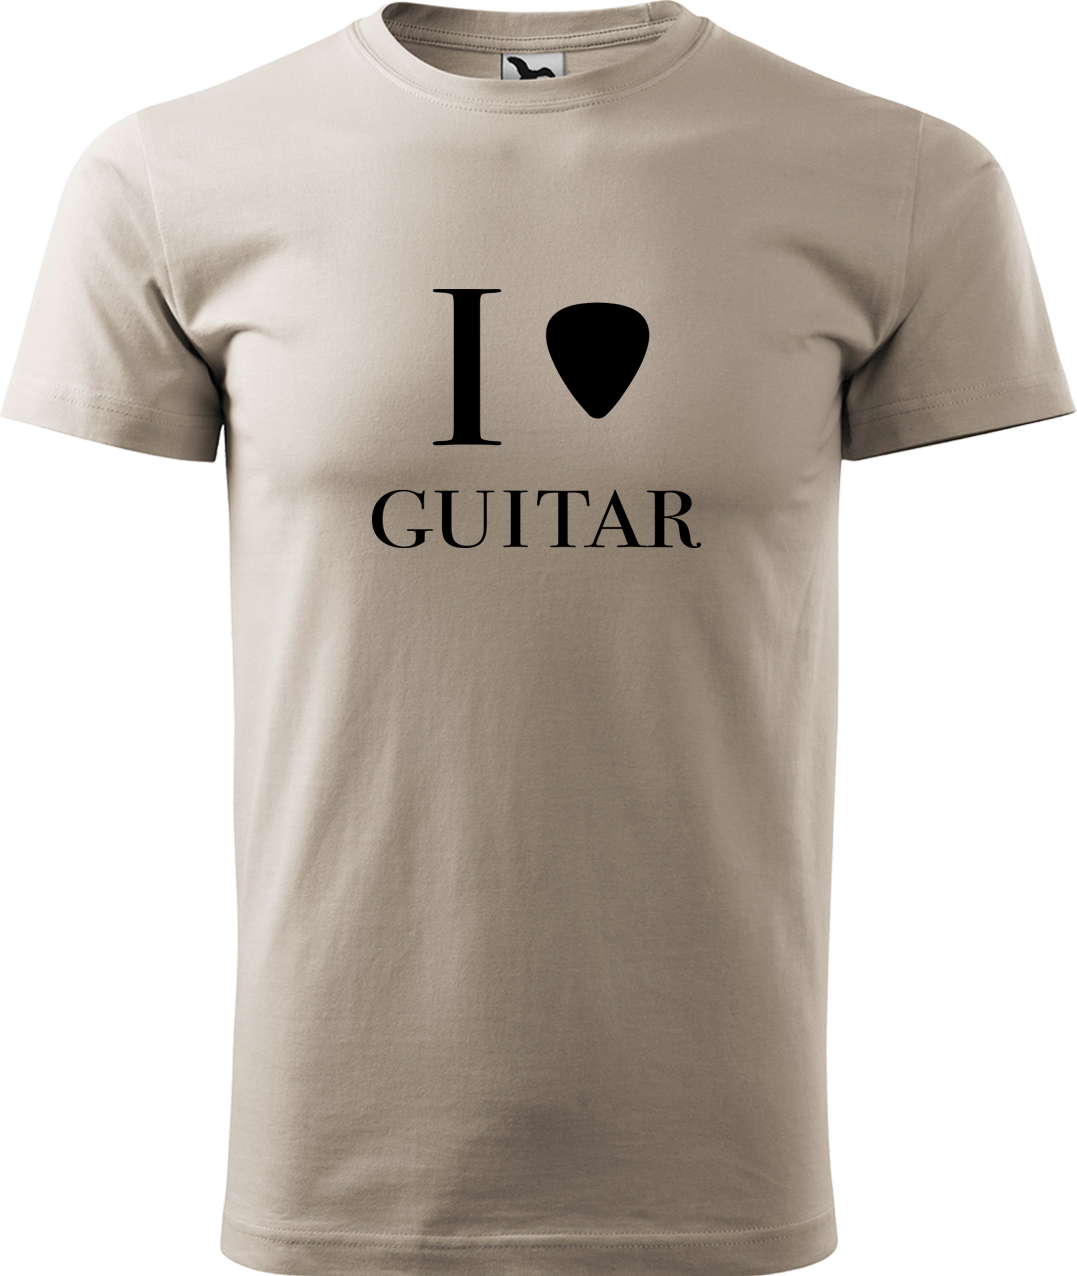 Pánské tričko s kytarou - I love guitar Velikost: L, Barva: Ledově šedá (51), Střih: pánský